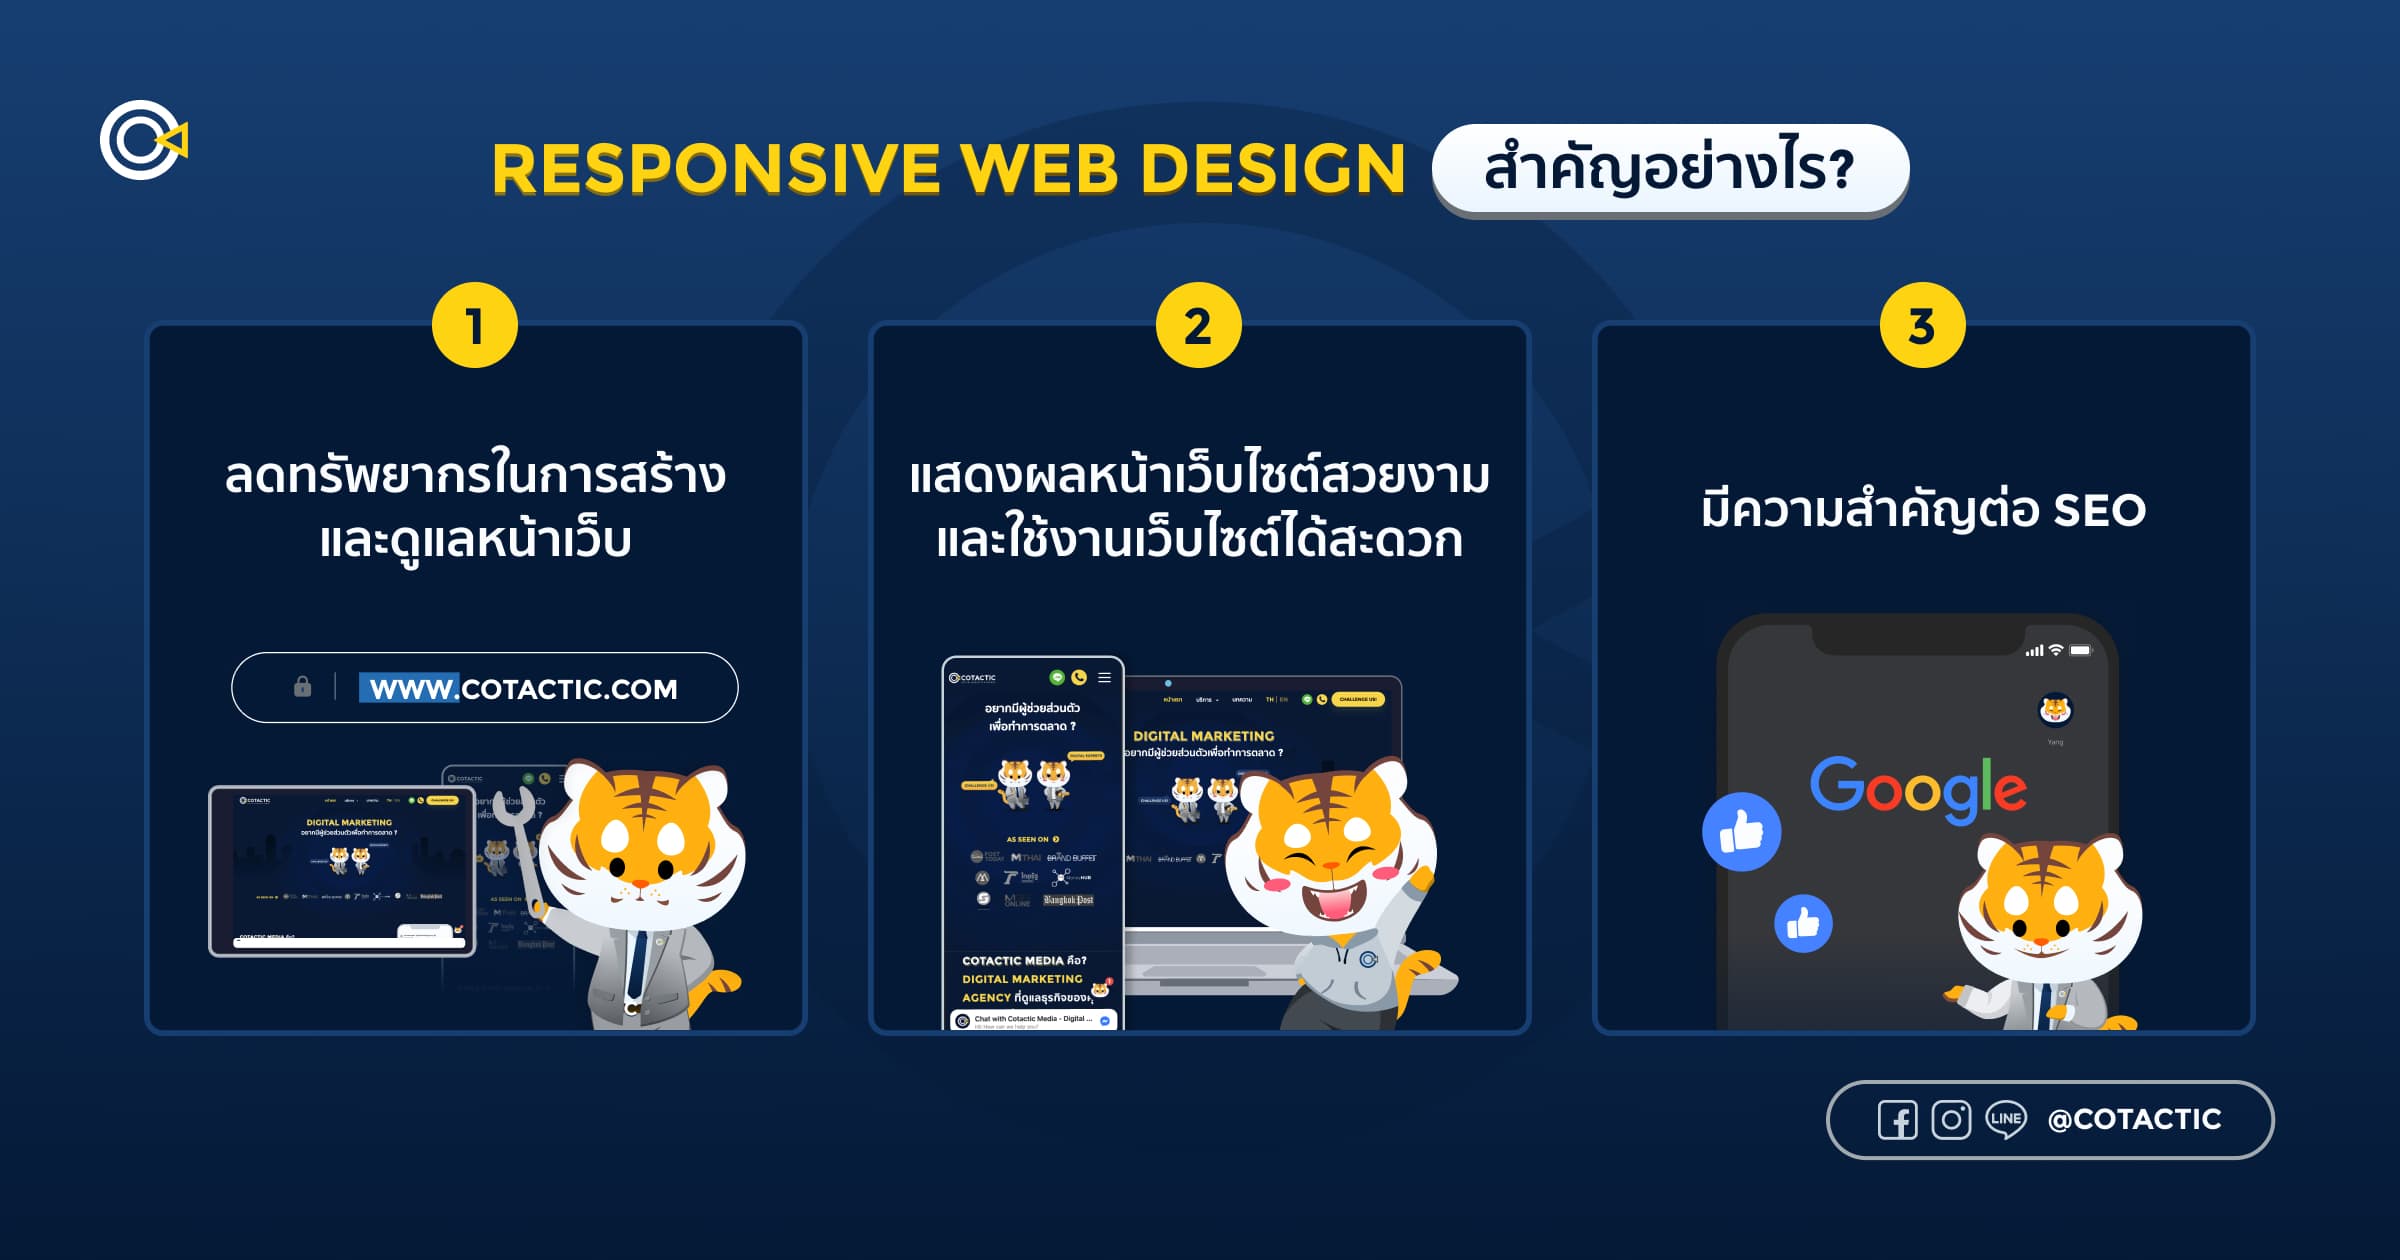 ความสำคัญของ Responsive Web Design